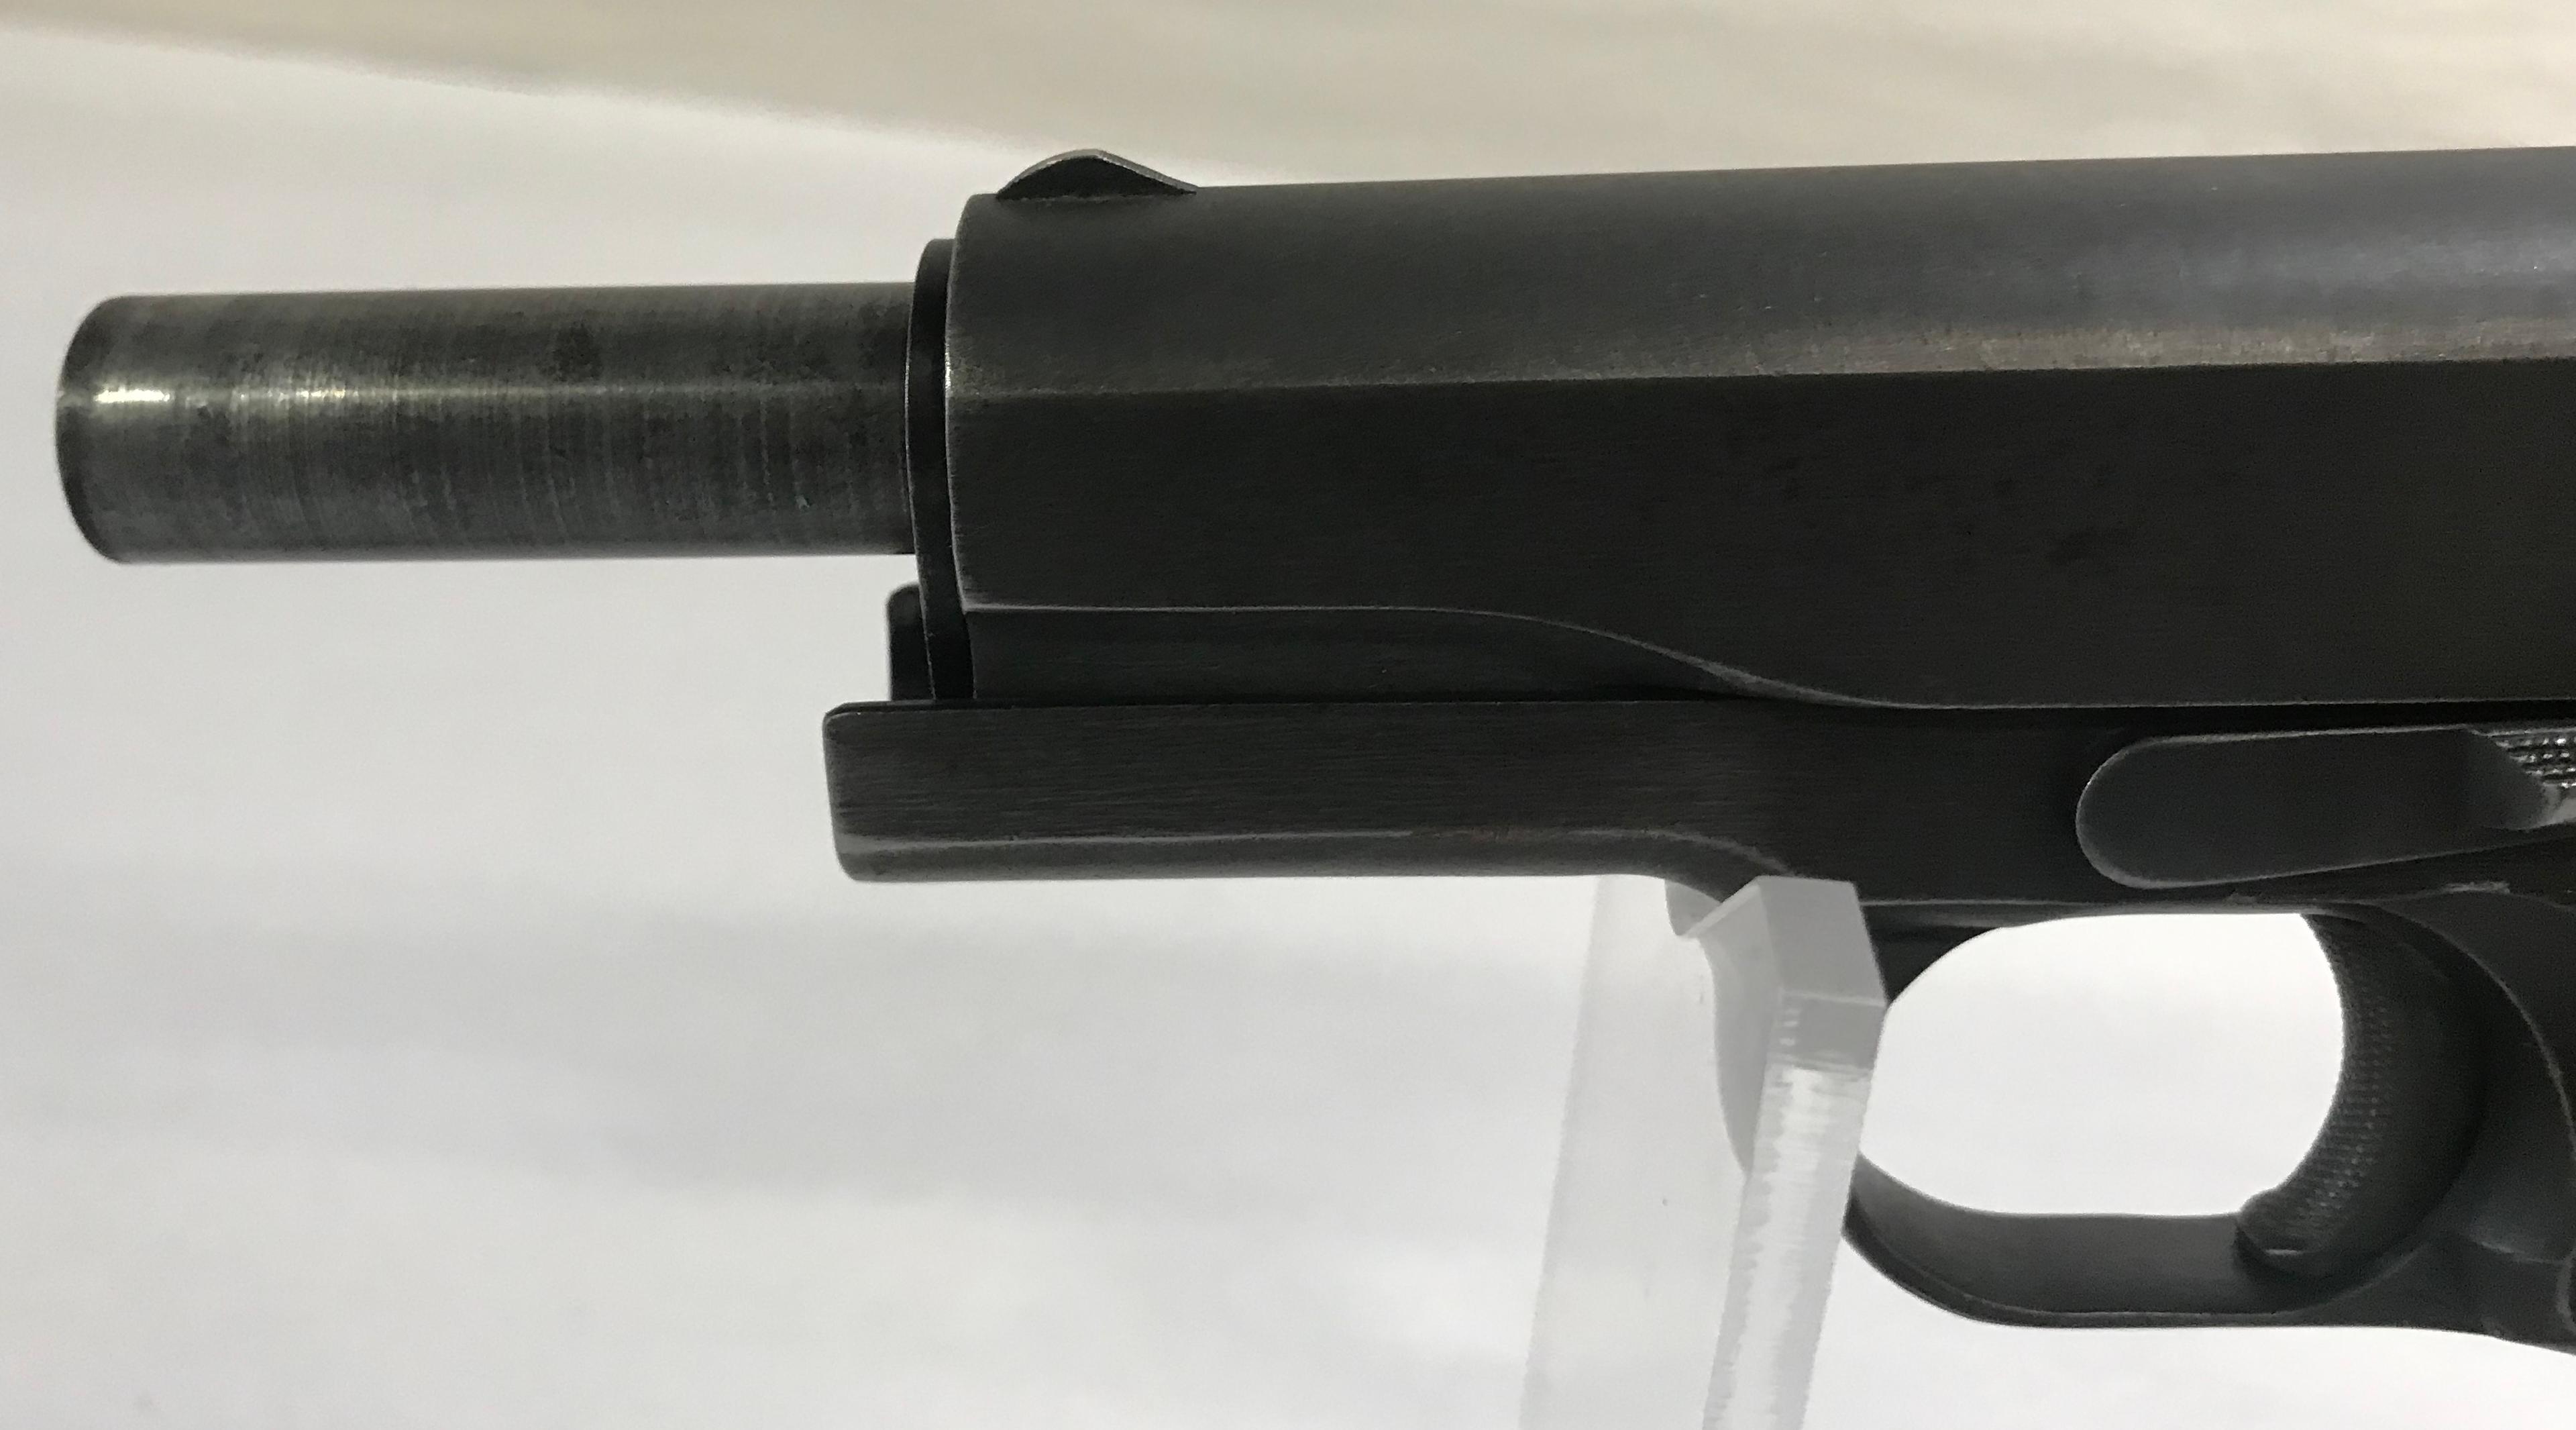 Remington US Army M1911A1 .45 Pistol